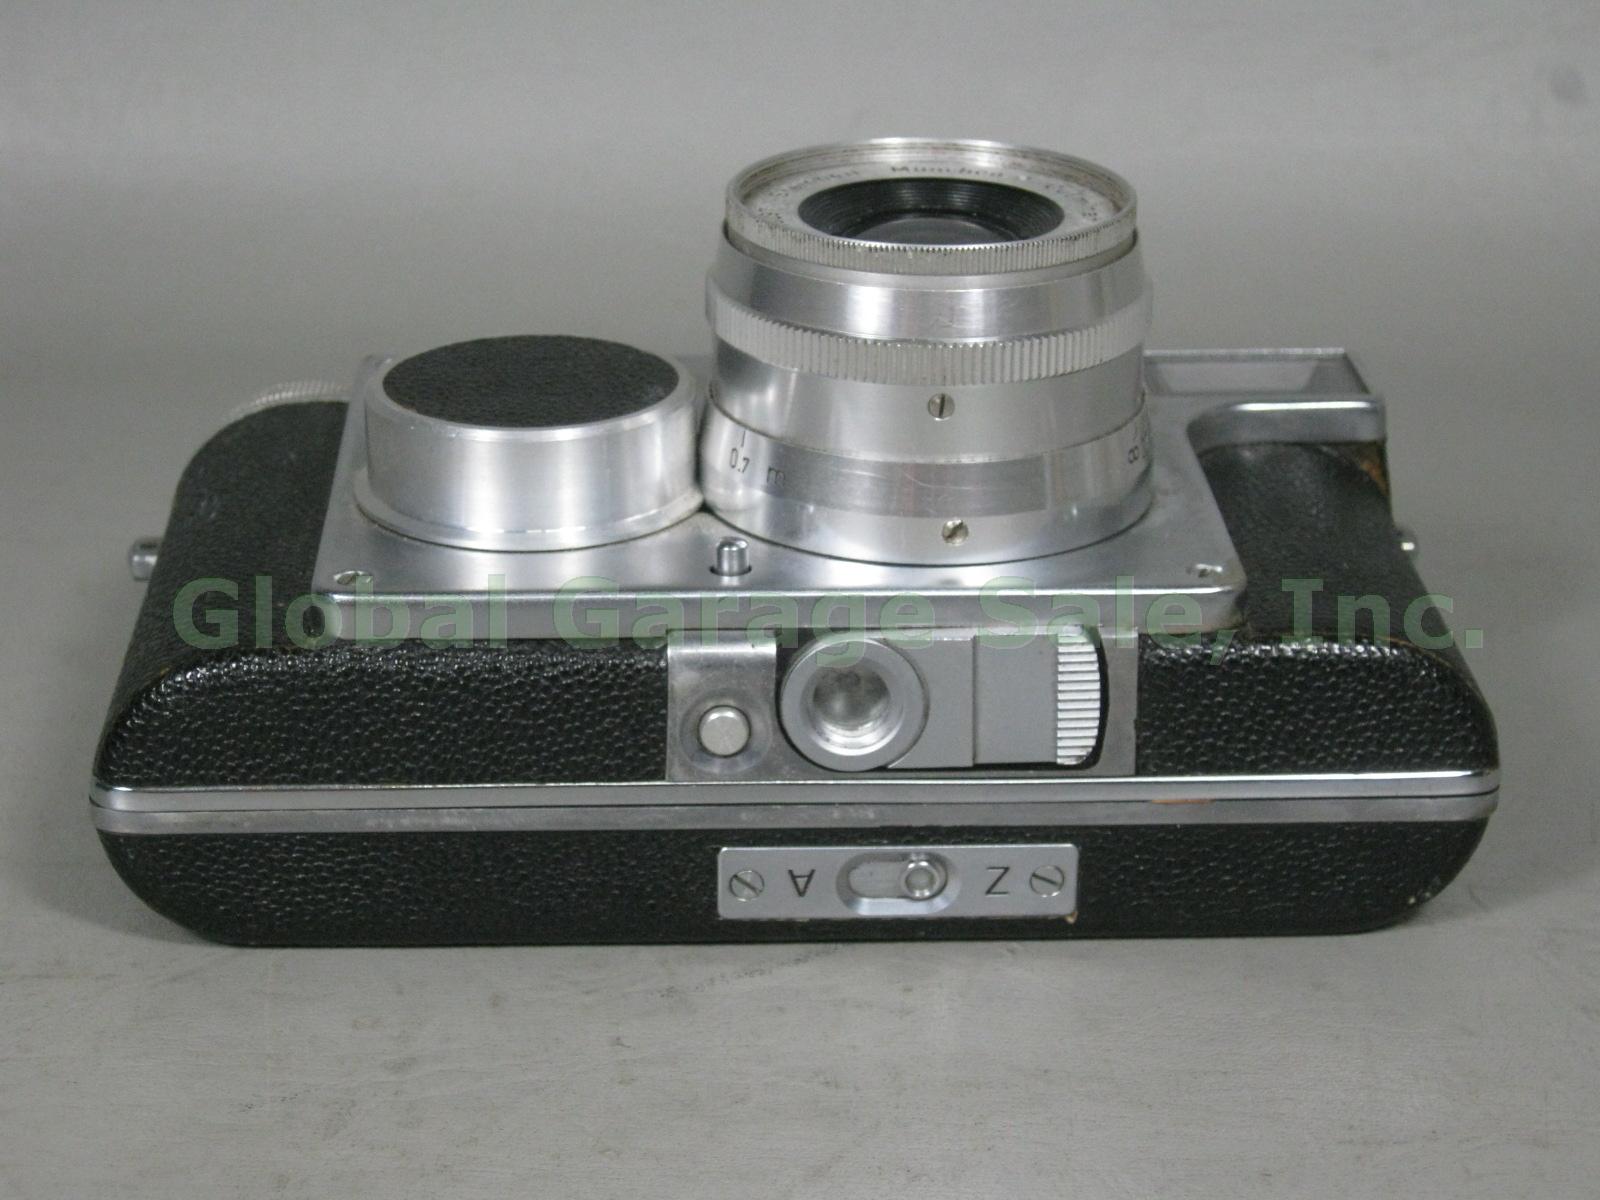 RARE Vtg 1940s Steinheil Munchen Casca I Camera Culminar 2.8 1:2.8 5cm Lens NR! 7